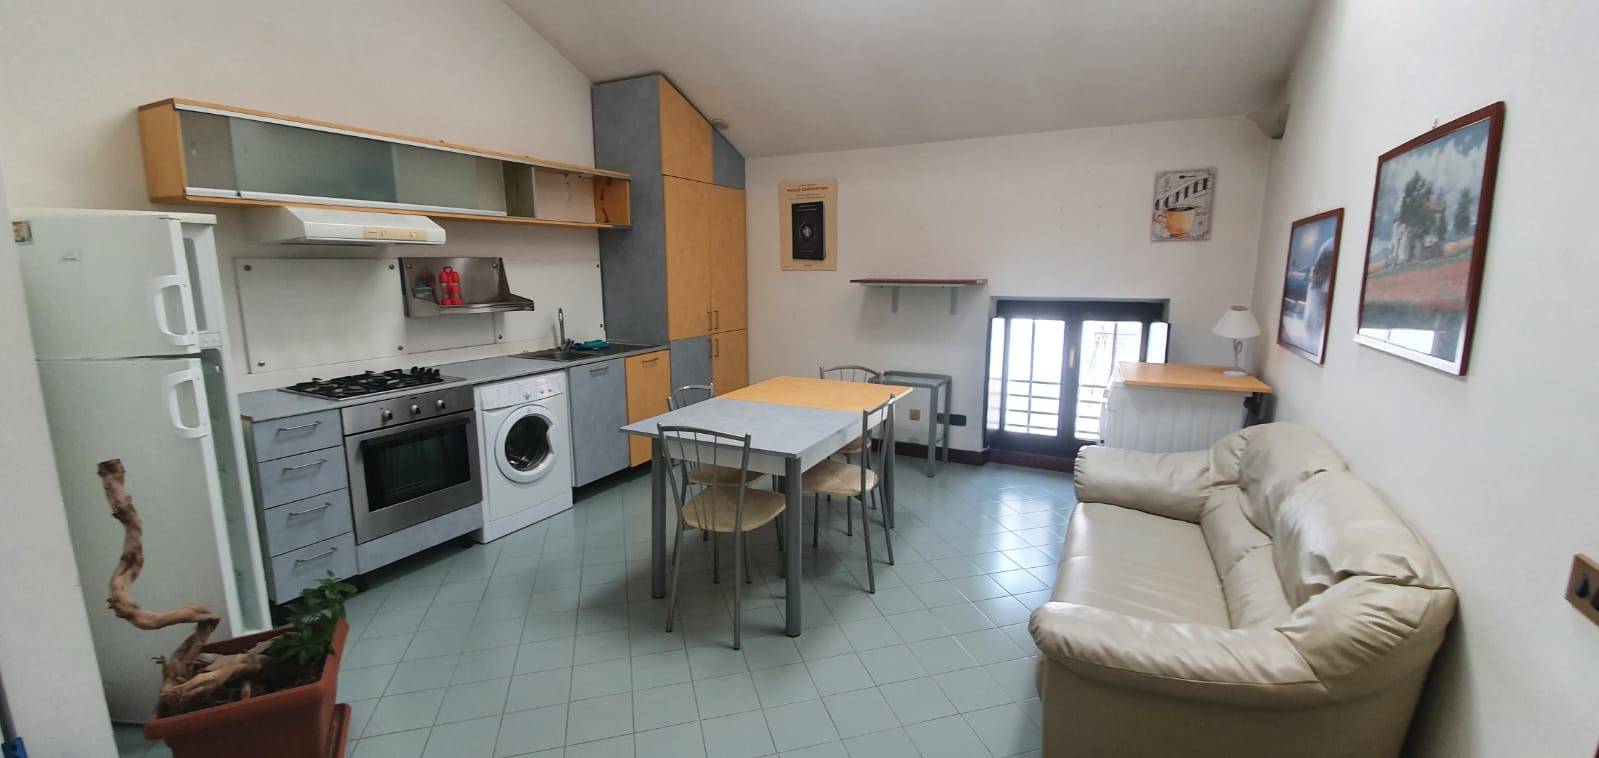 Appartamento in affitto a Oleggio, 2 locali, prezzo € 350 | CambioCasa.it